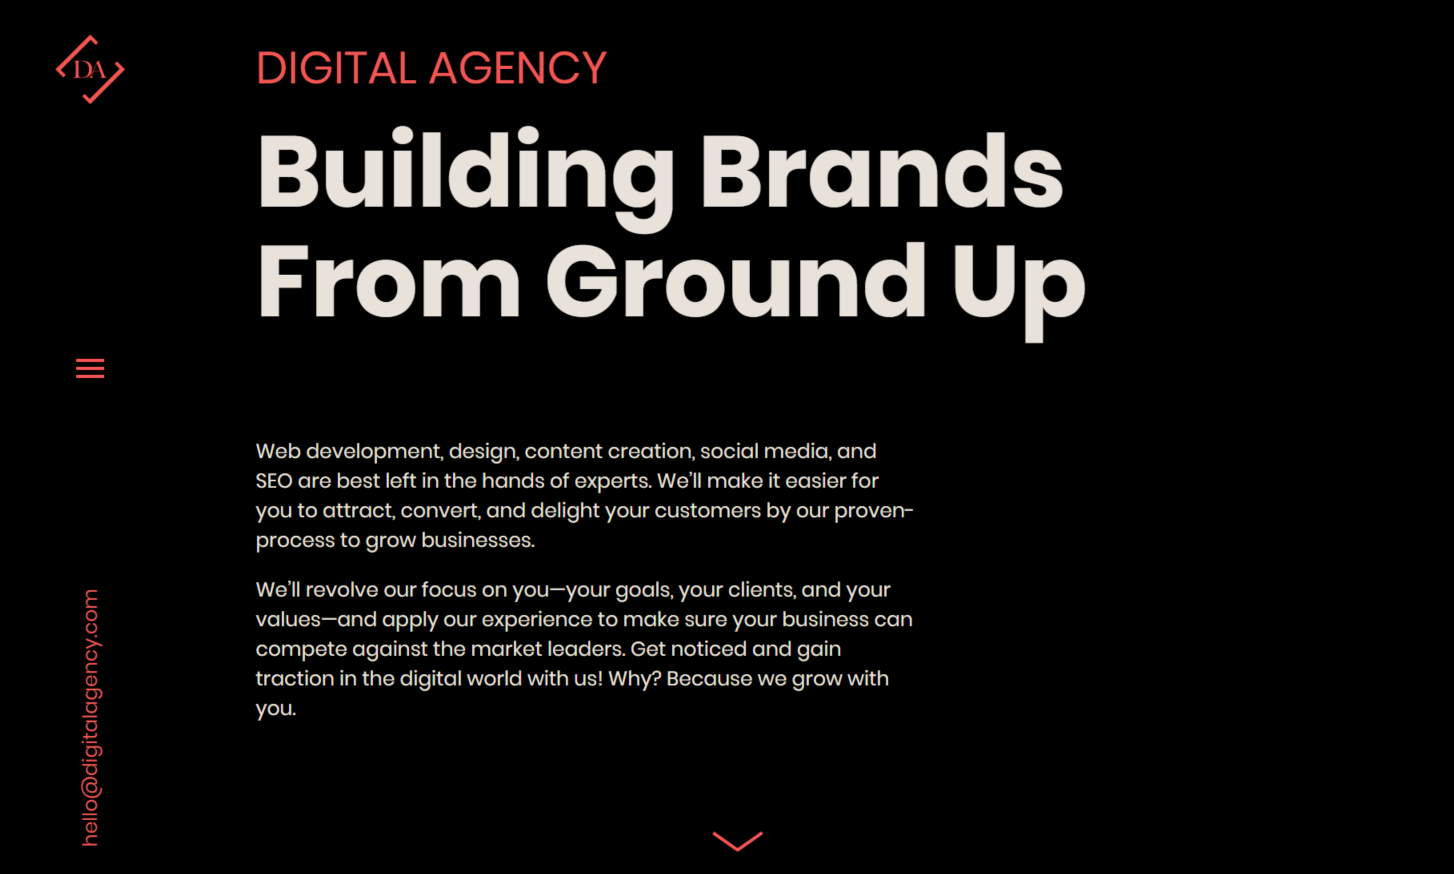 Digital Agency Sample Website Design